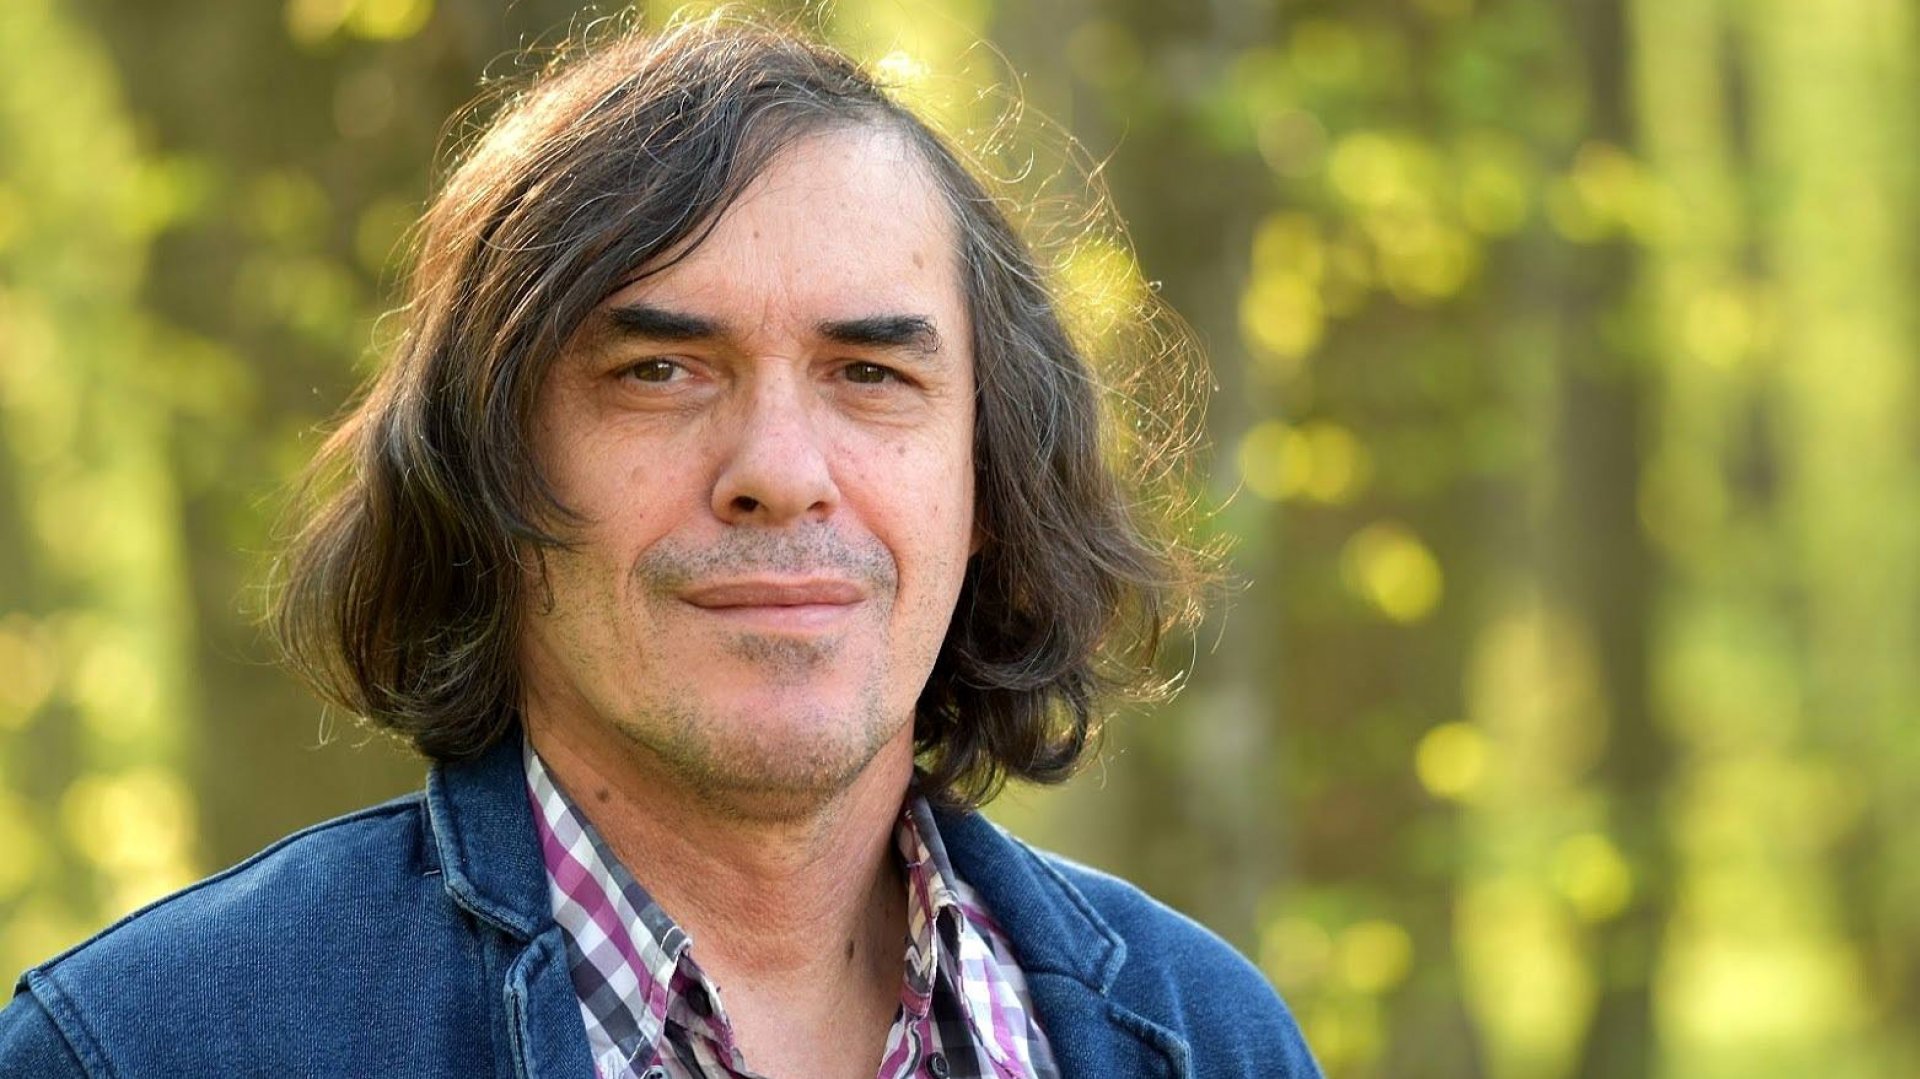 poezii.online Scriitorul Mircea Cărtărescu a câștigat premiul "Thomas Mann" pentru Literatură pe 2018